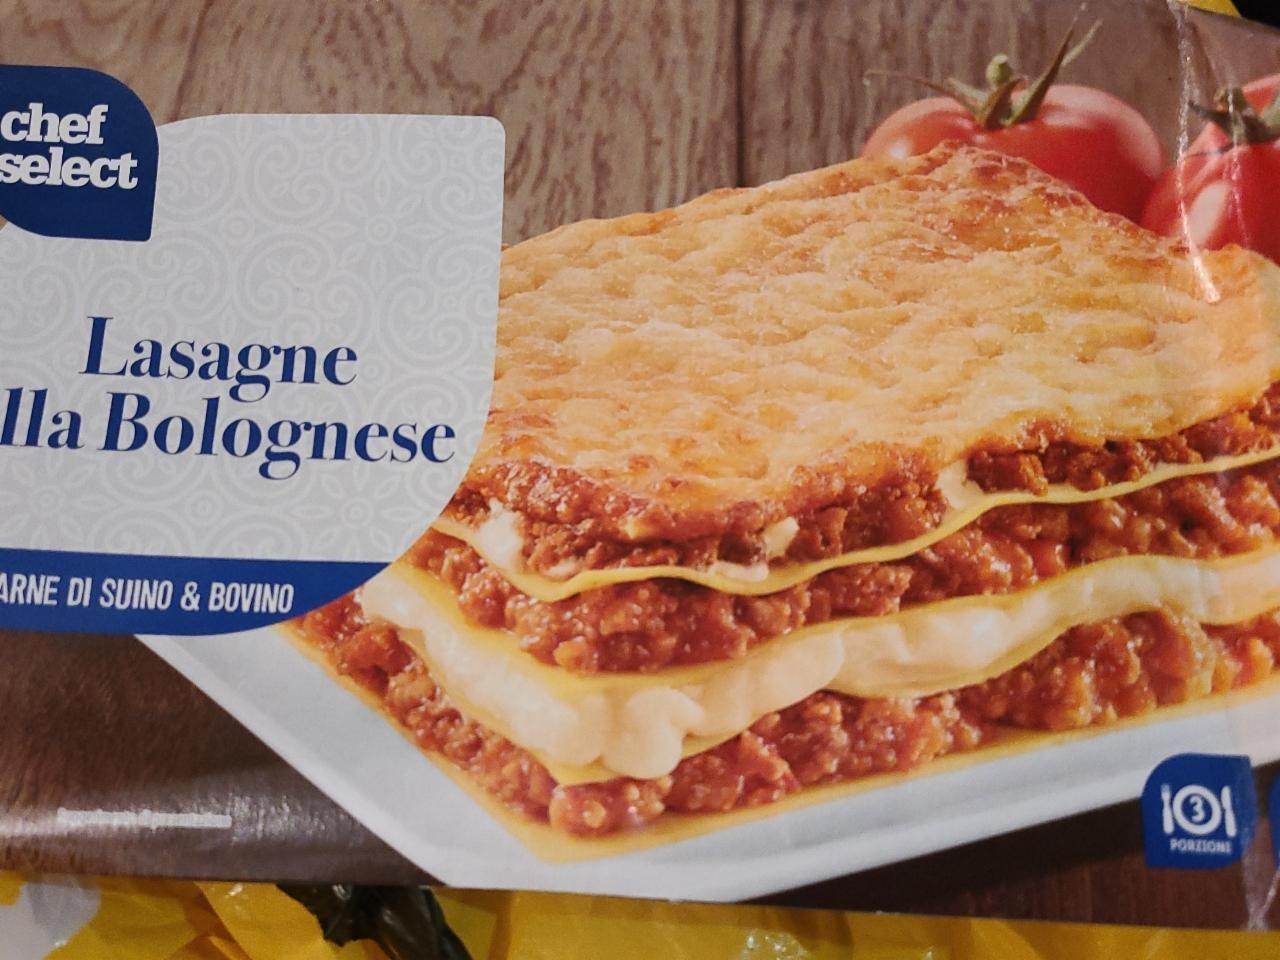 Zdjęcia - Lasagne alla bolognese Chef Select